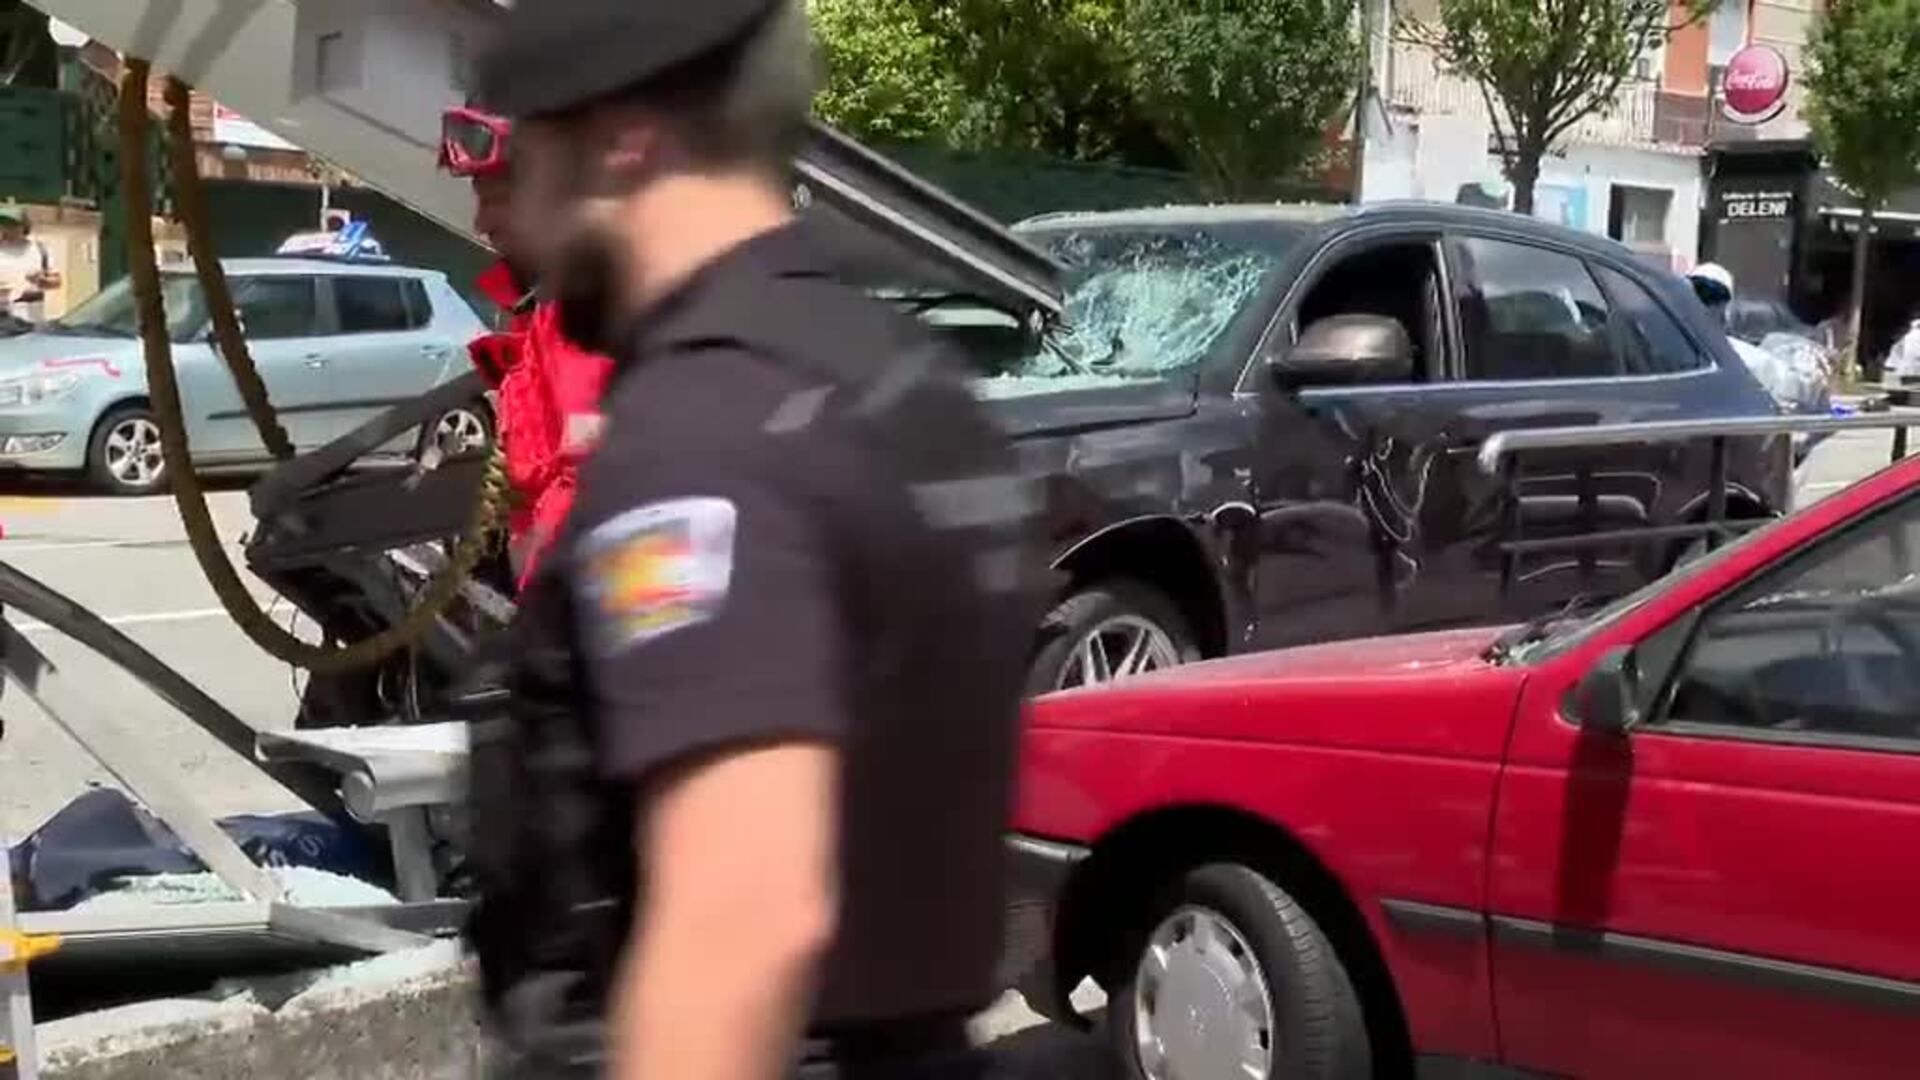 Cuatro personas heridas en el choque de un coche contra una marquesina en Vigo